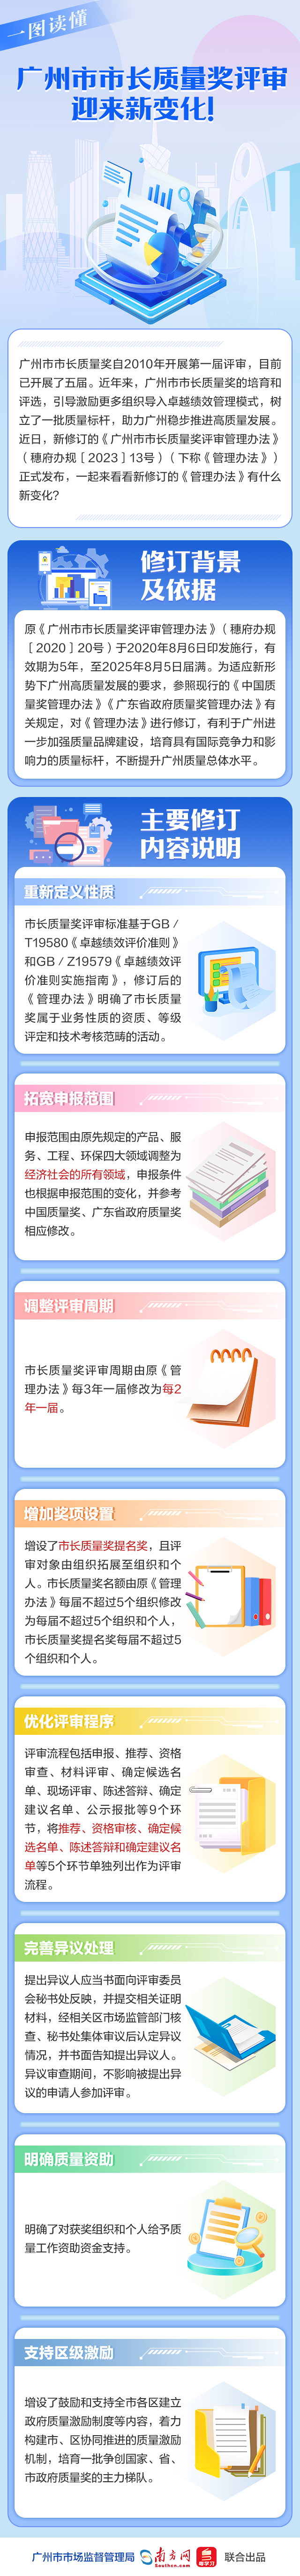 一图读懂——广州市市长质量奖评审迎来新变化.jpg